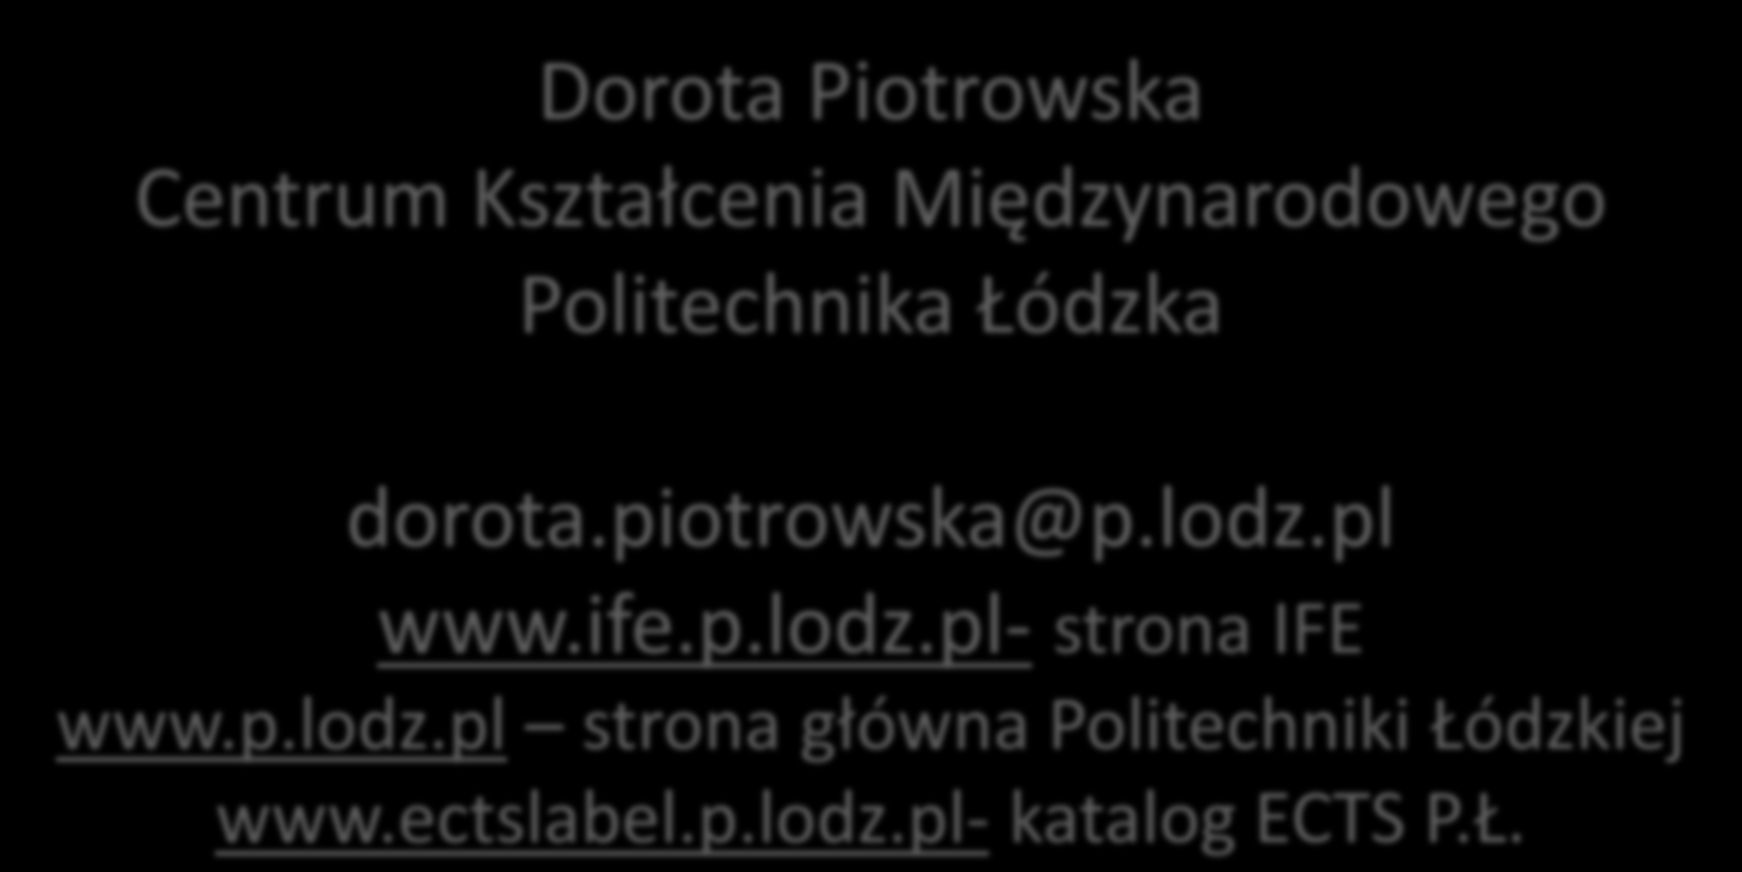 Dziękuję za UWAGĘ Dorota Piotrowska Centrum Kształcenia Międzynarodowego Politechnika Łódzka dorota.piotrowska@p.lodz.